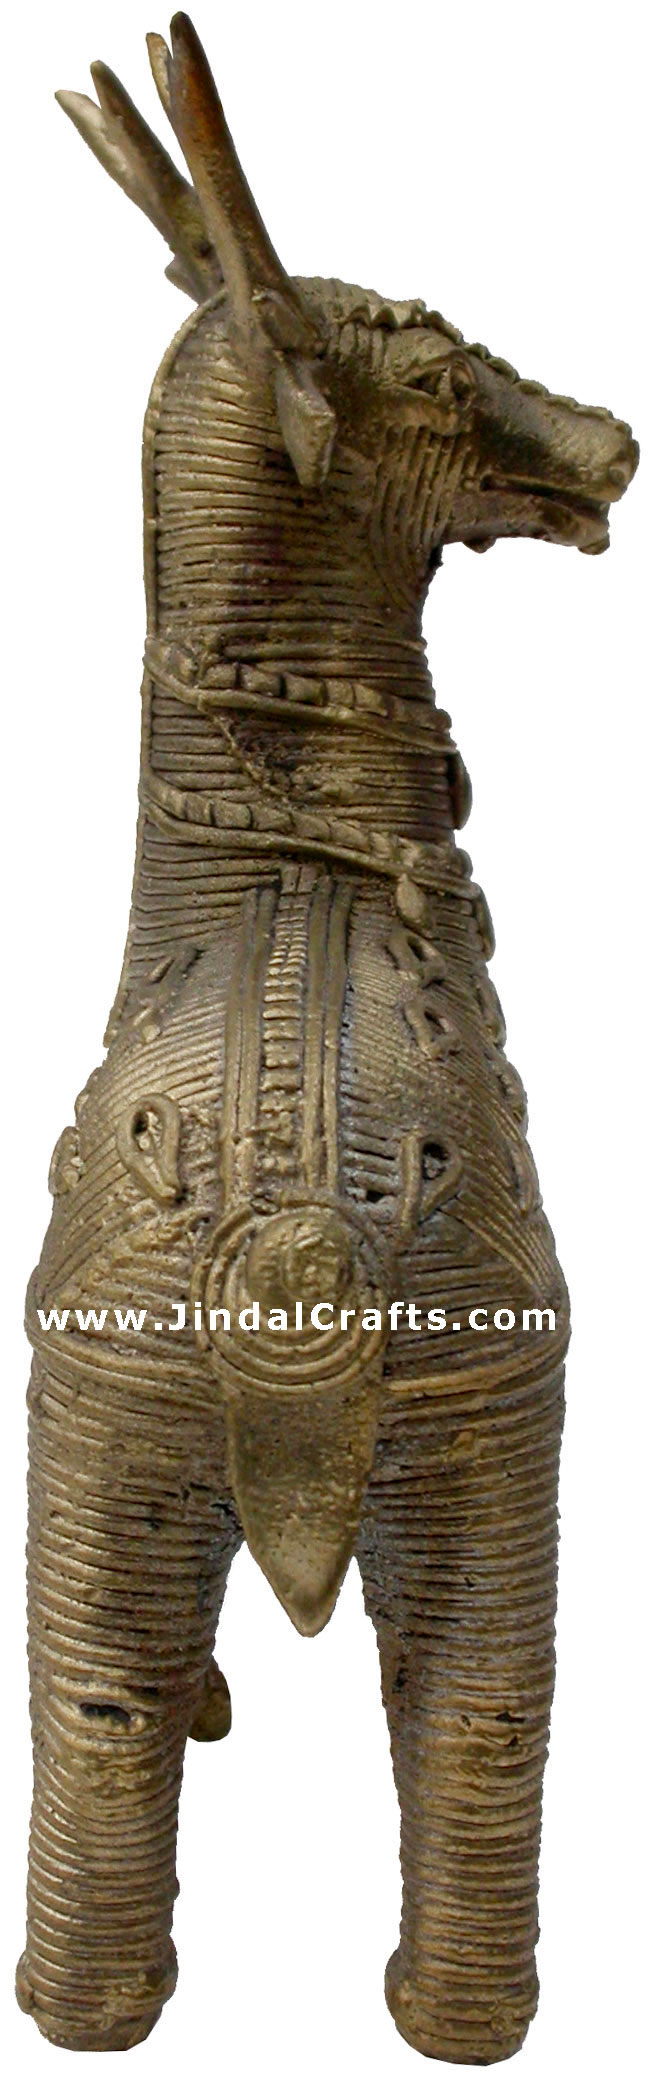 Deer - Tribal Dhokra Metal Animal Artifact from India